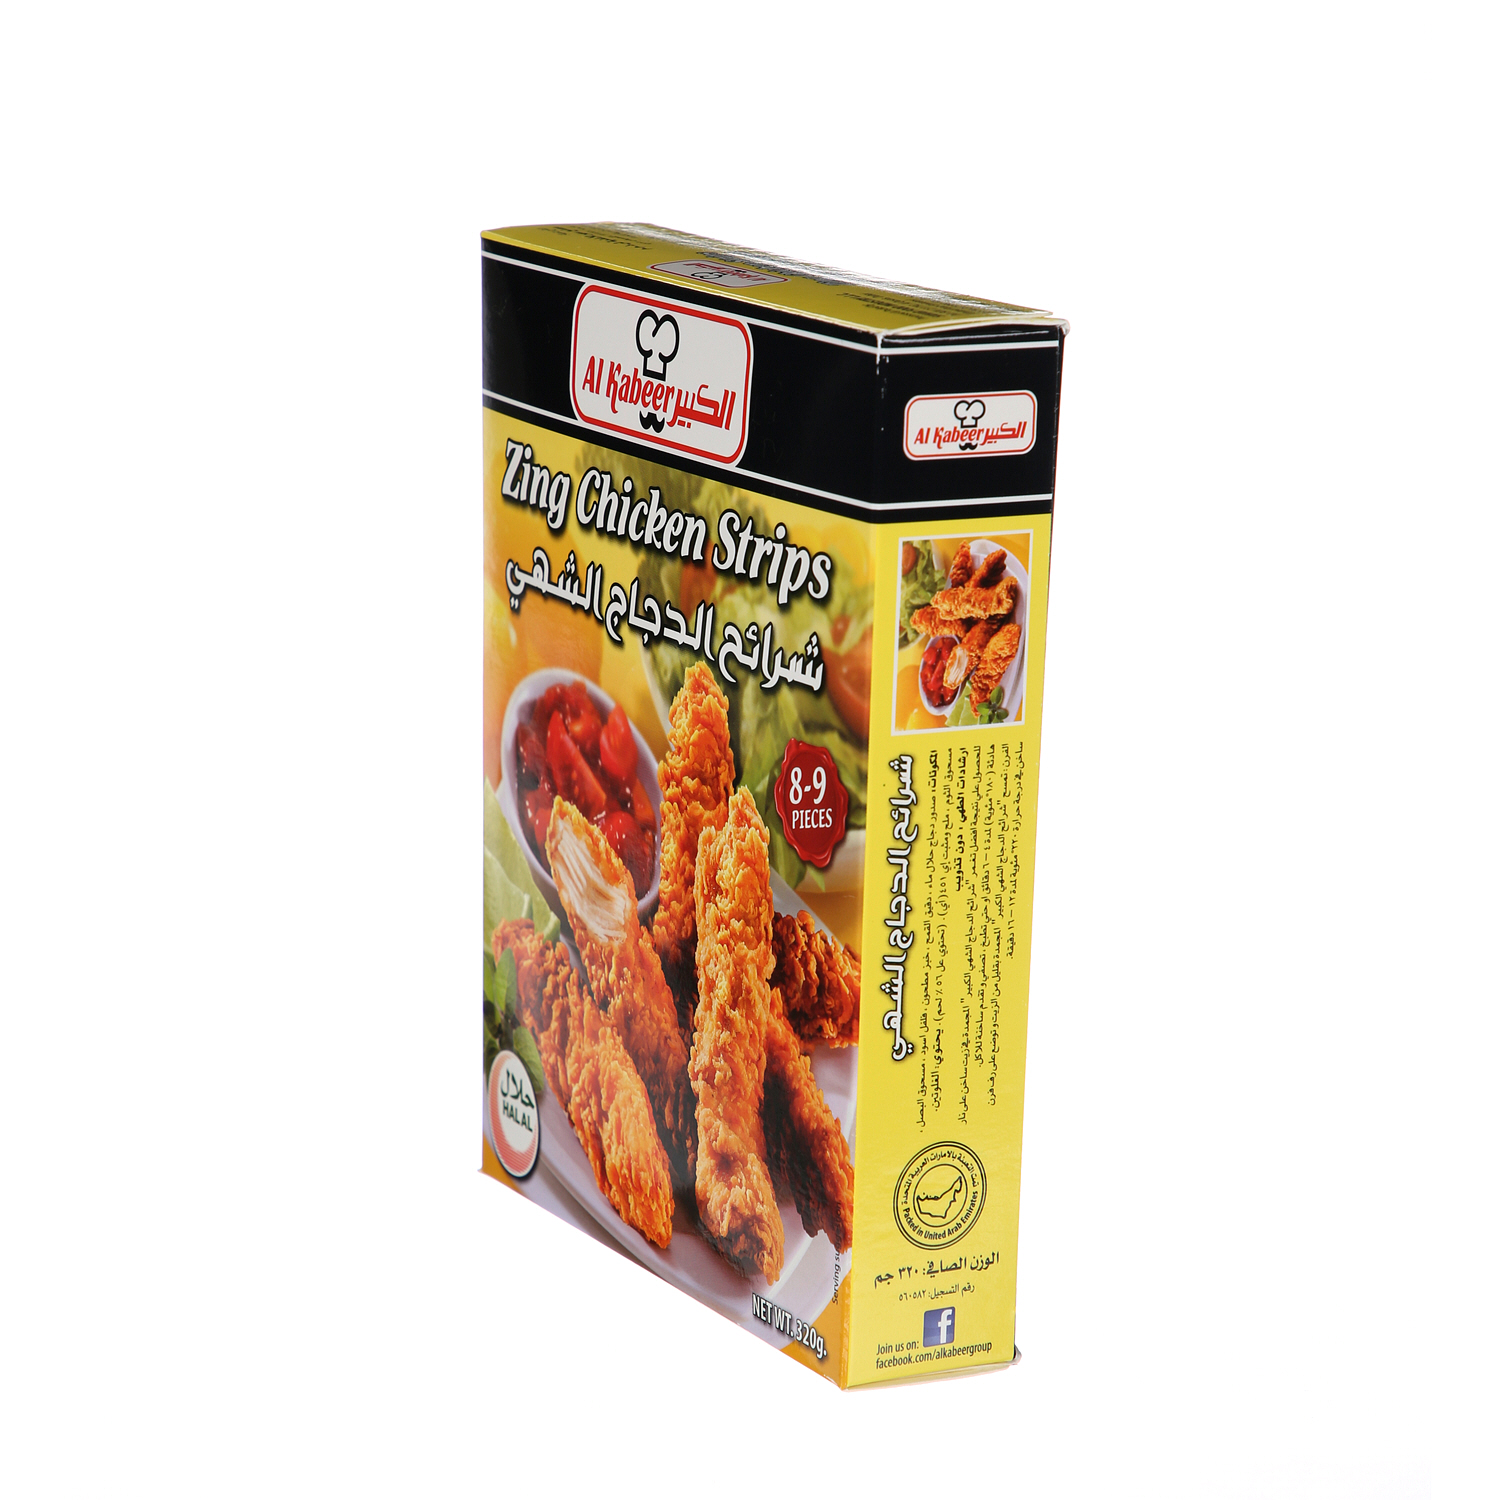 Al Kabeer Zing Chicken Strips 320 g